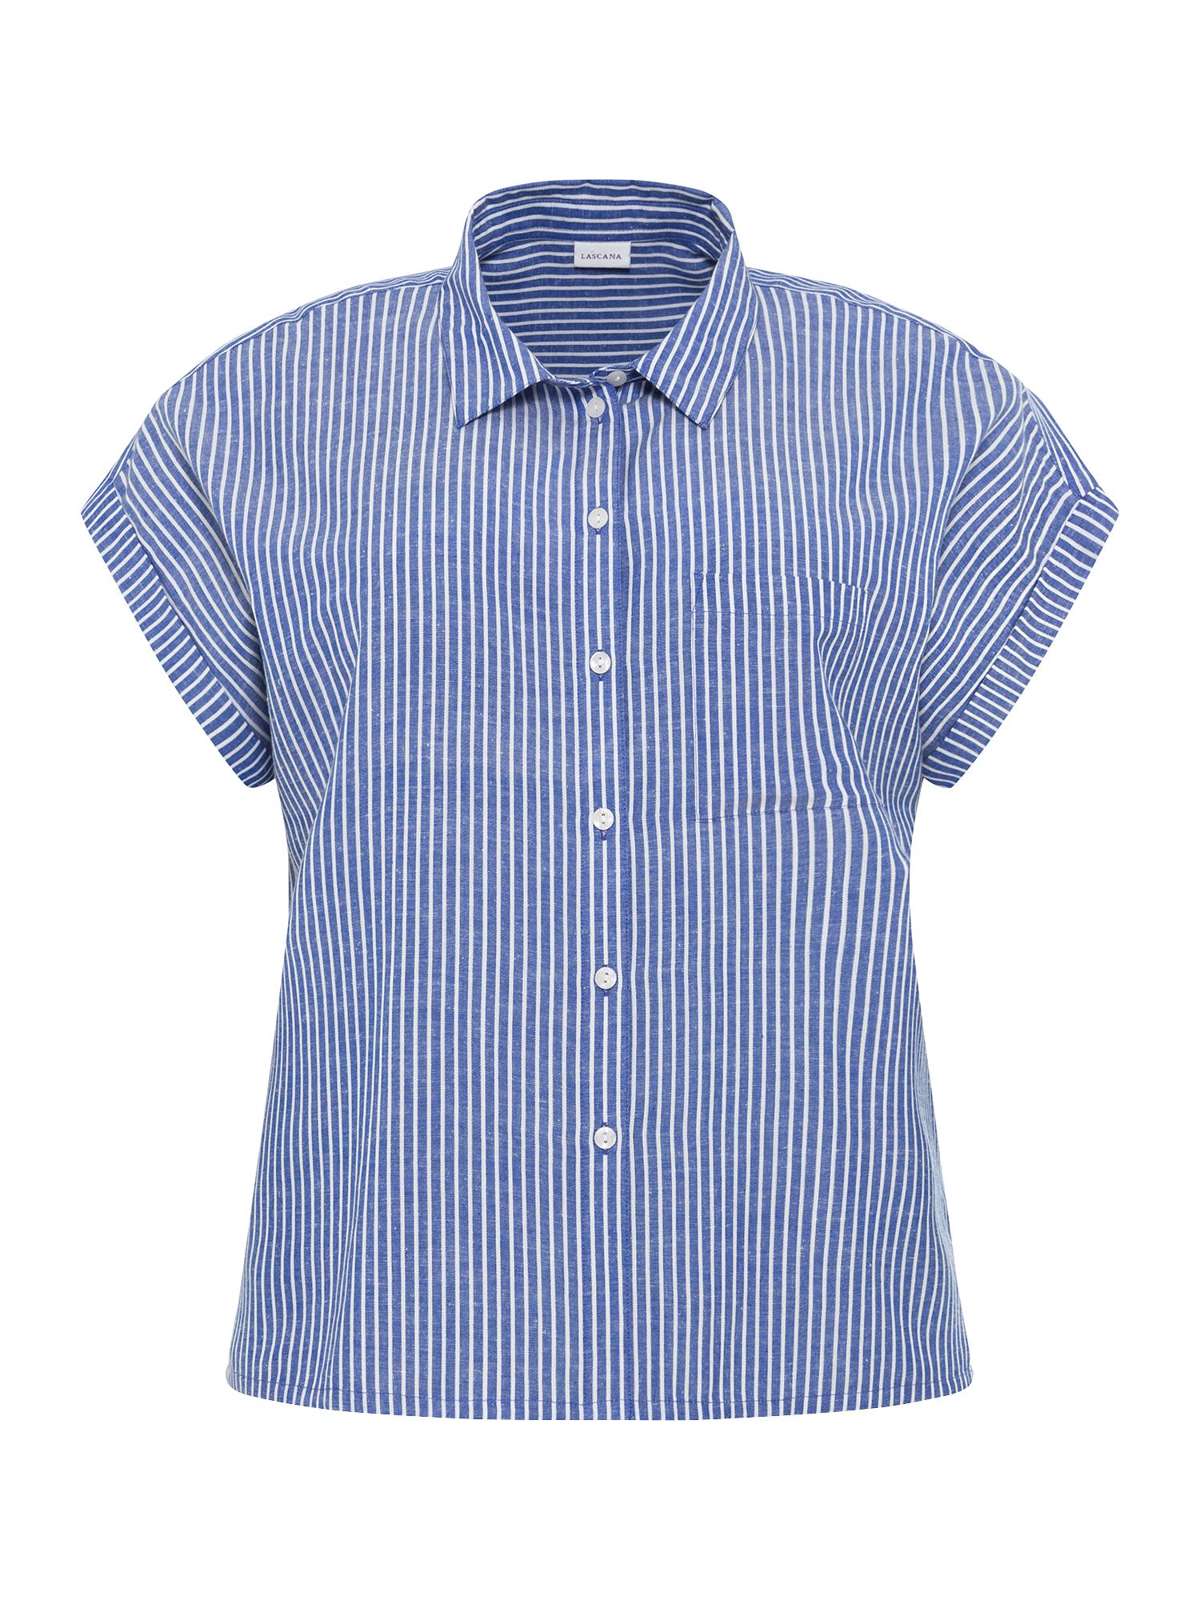 Блузка-рубашка из смеси льна с планкой на пуговицах, льняная блузка, блузка с коротким рукавом